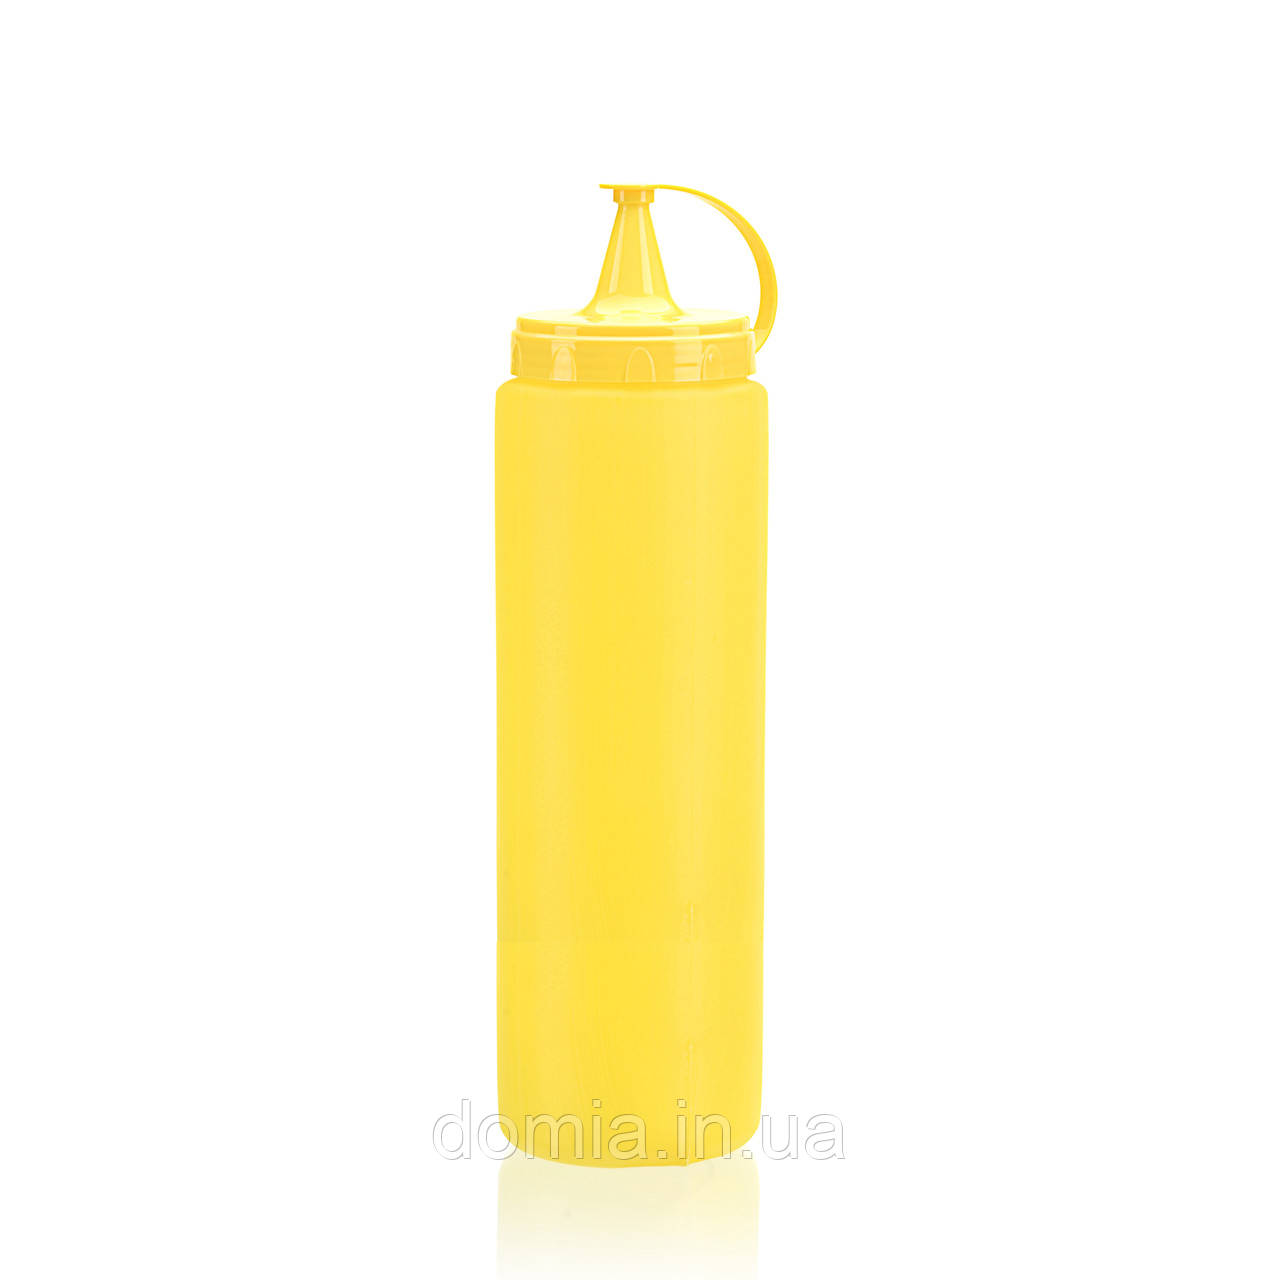 Пляшка для соусу (7*24,4 см) 0,7 л. АР-9418, TITIZ Plastik Туреччина